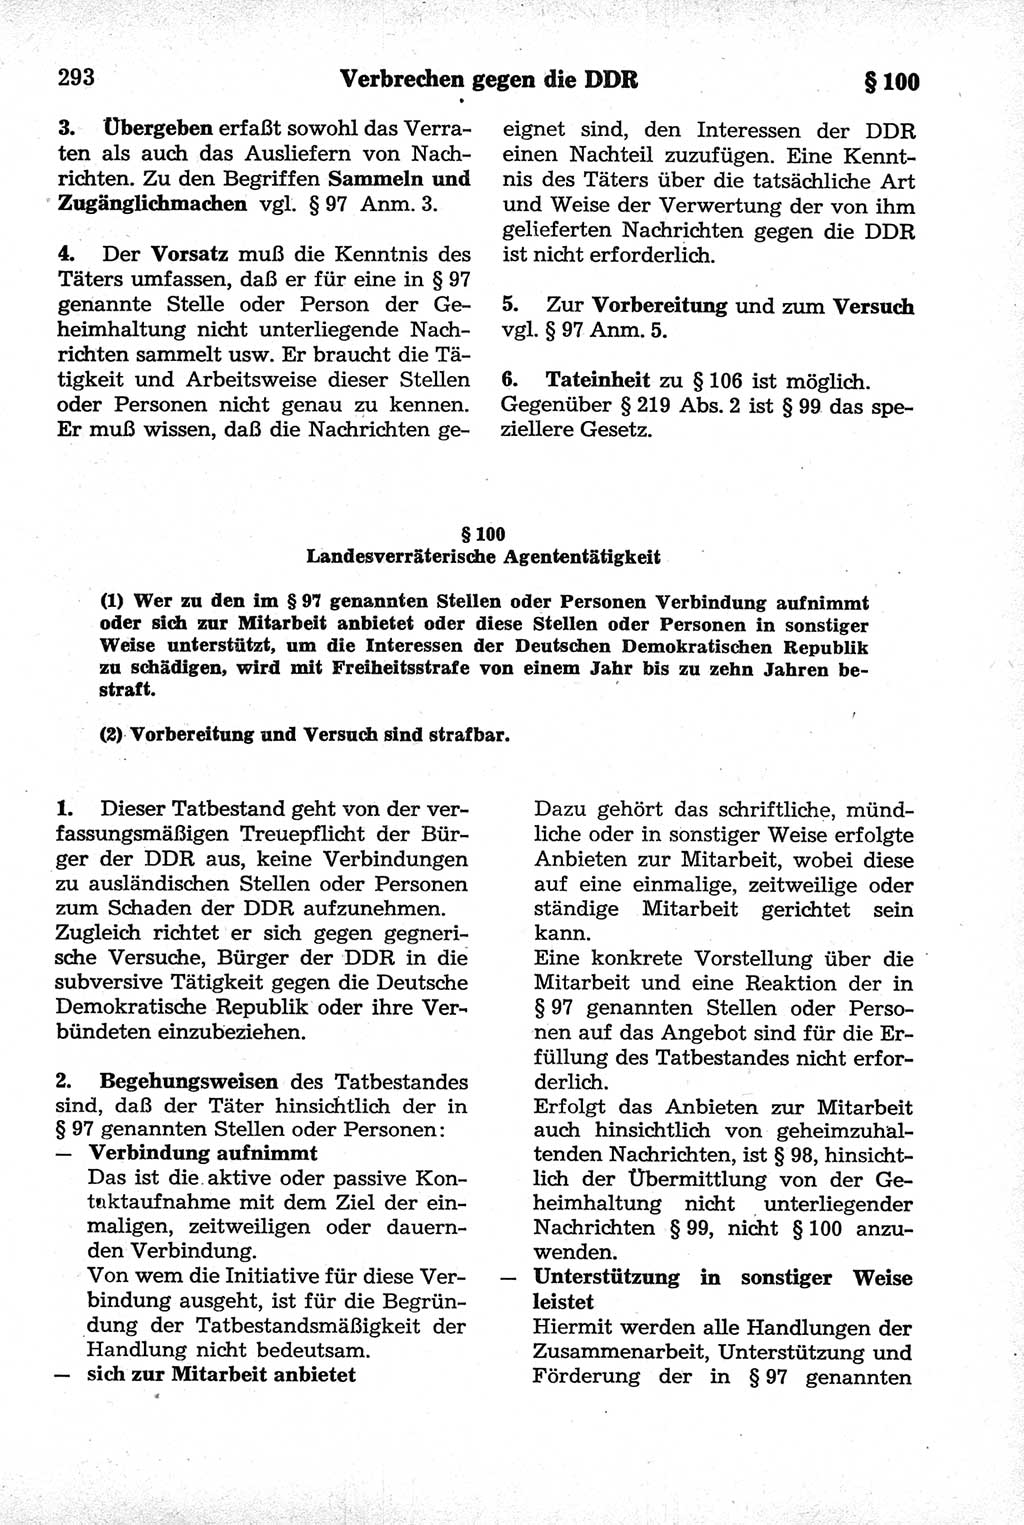 Strafrecht der Deutschen Demokratischen Republik (DDR), Kommentar zum Strafgesetzbuch (StGB) 1981, Seite 293 (Strafr. DDR Komm. StGB 1981, S. 293)